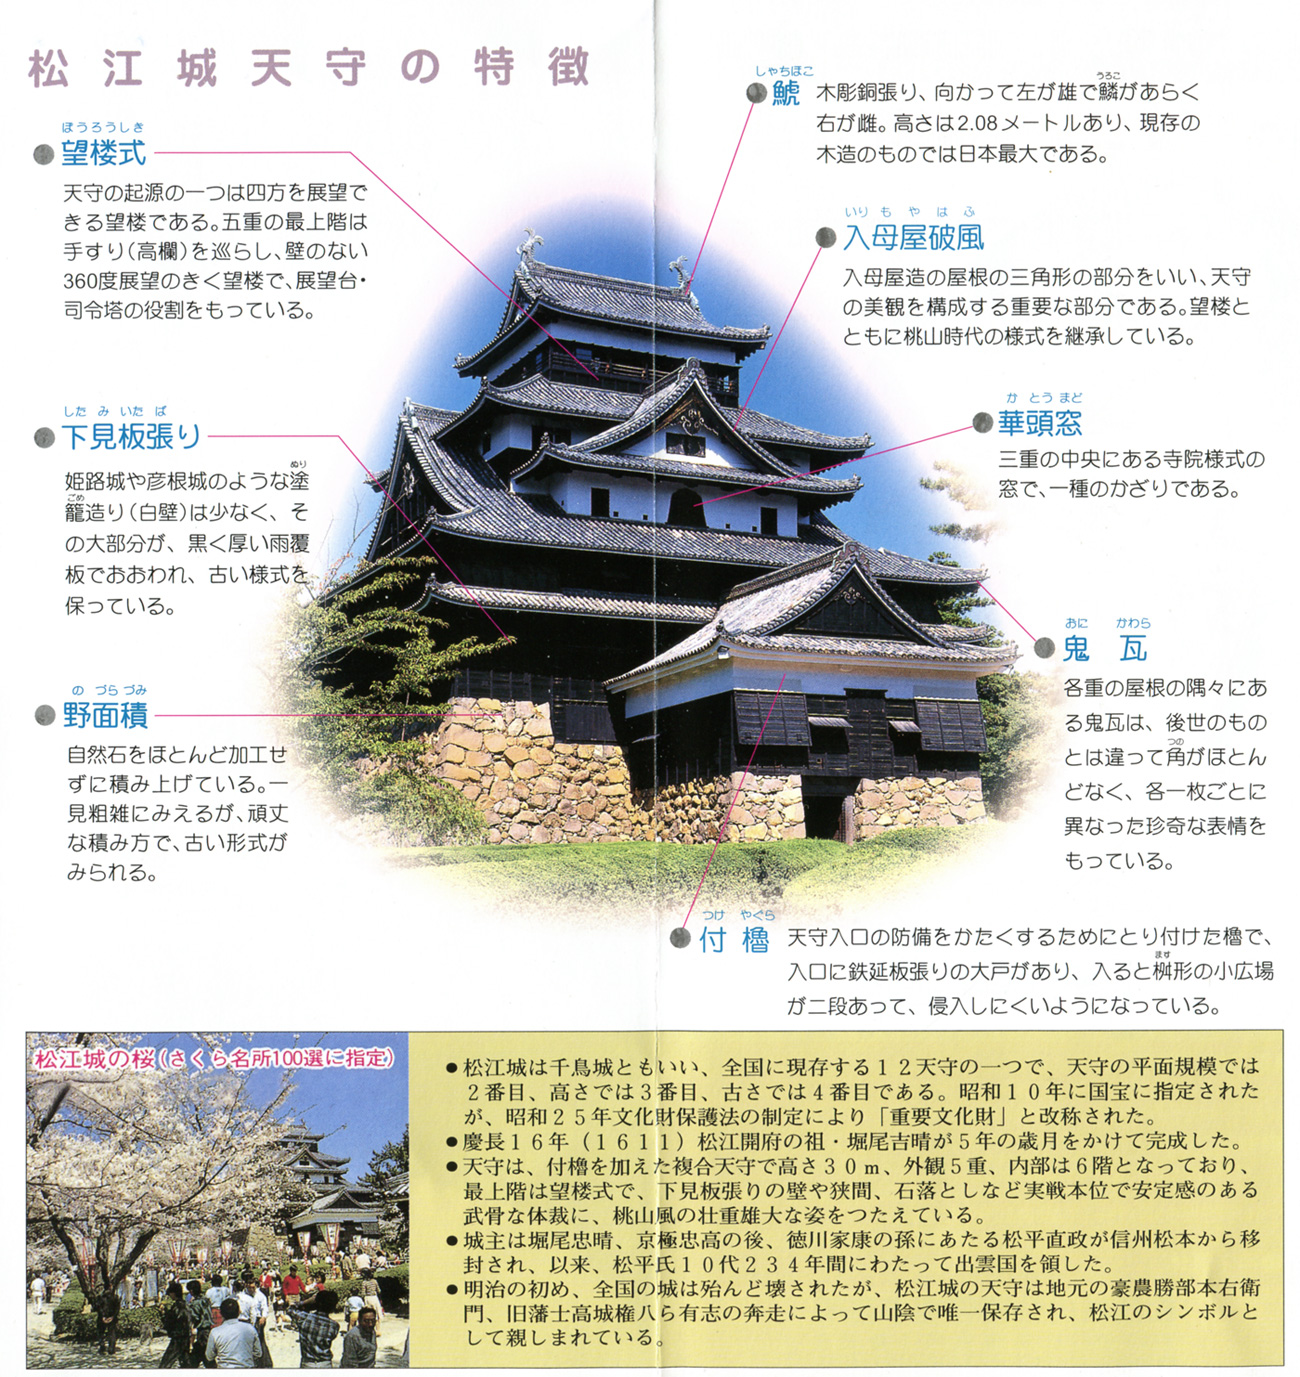 松江城天守の特徴